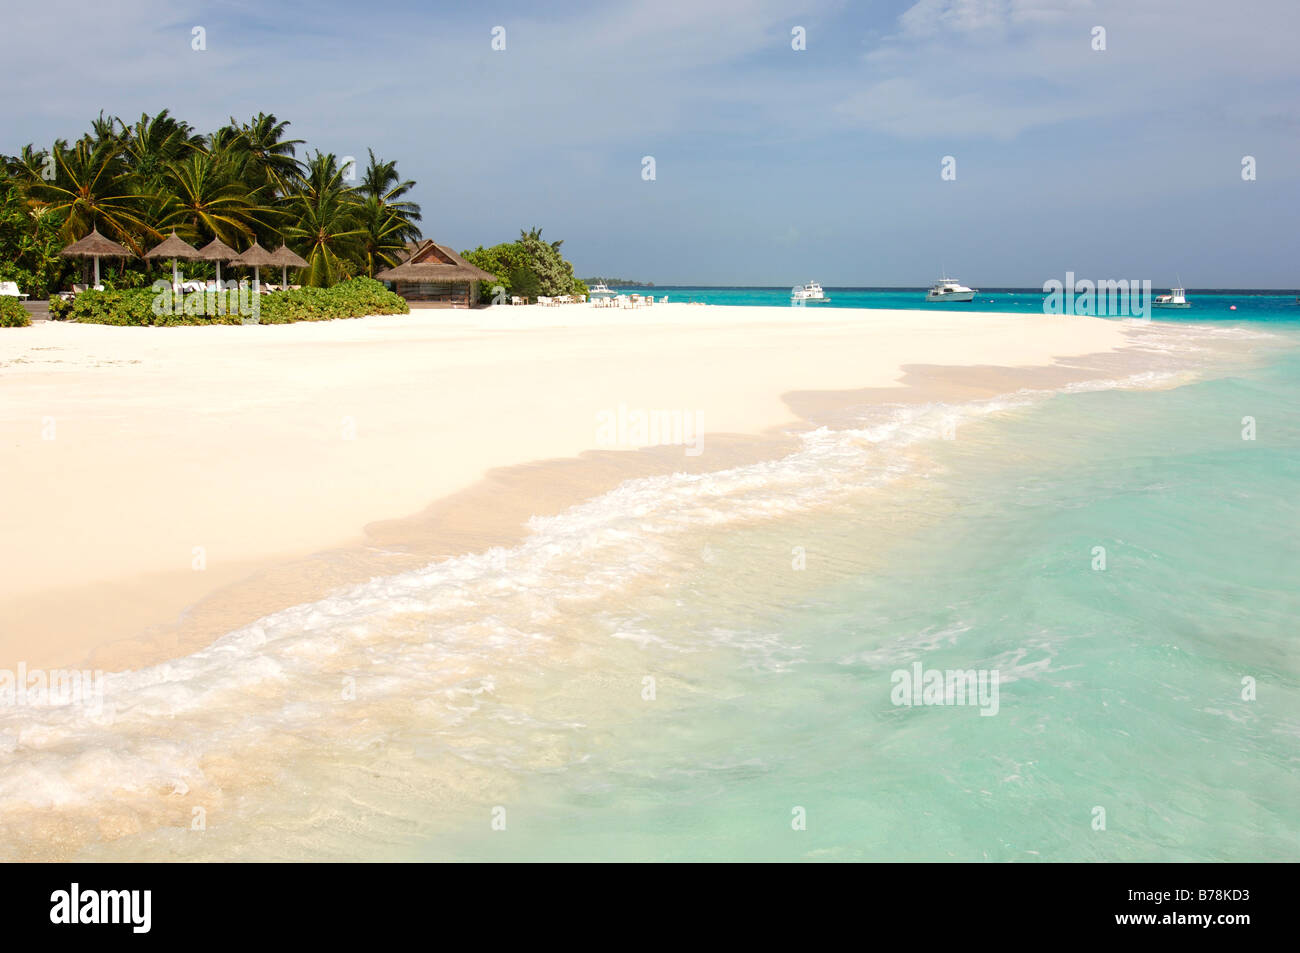 Plage de sable à Laguna Resort, les Maldives, l'Océan Indien Banque D'Images